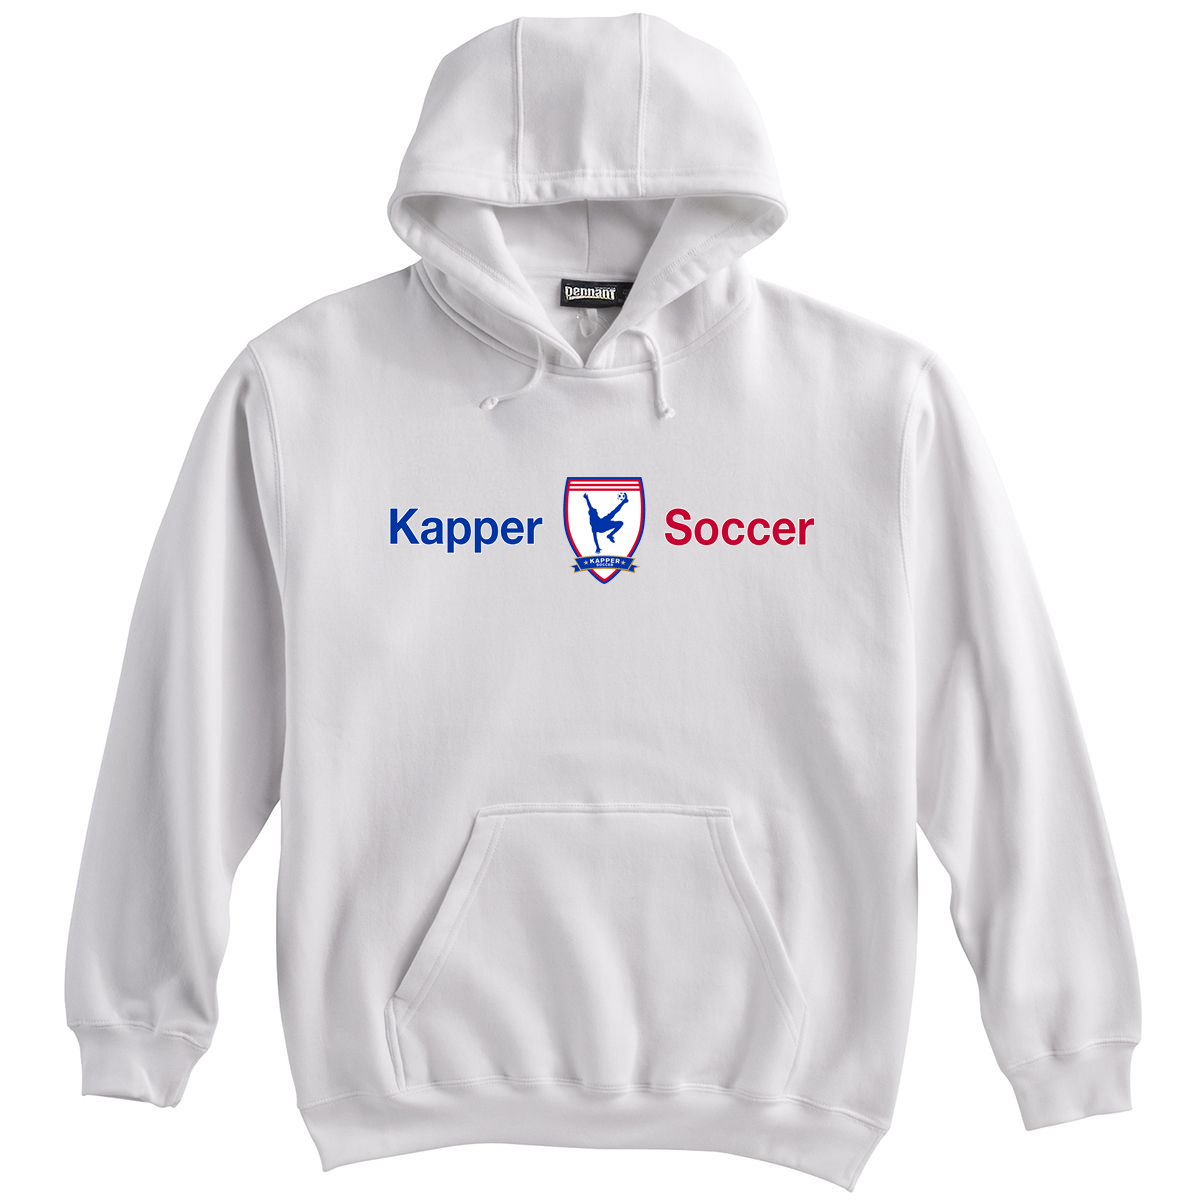 Kapper Soccer Sweatshirt